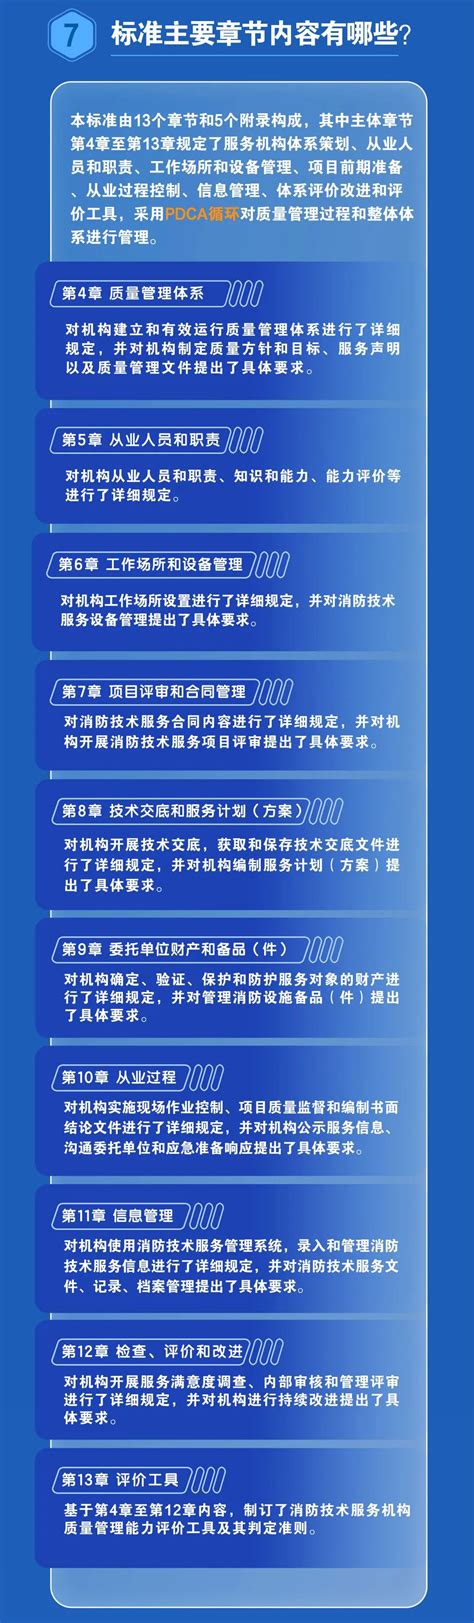 上海技能人才平均工资超13万元(附工资价位表)- 上海本地宝